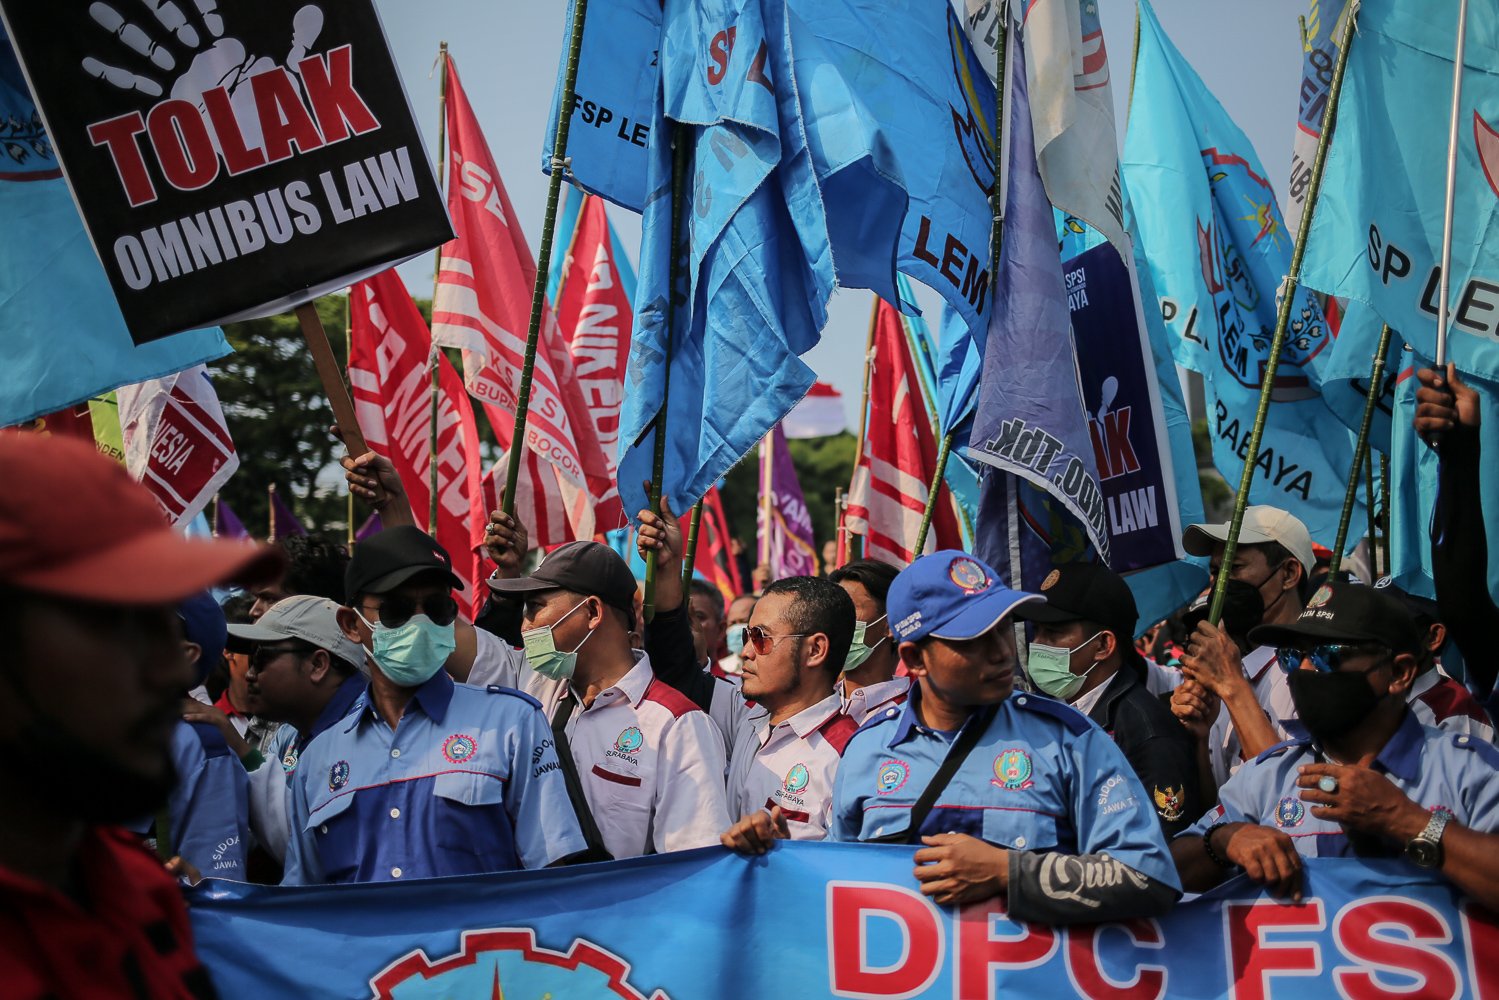 Sejumlah buruh berunjuk rasa di depan gedung DPR, Jakarta, Rabu (10/8). Dalam aksi tersebut mereka menuntut agar pemerintah menghapus Omnibus law.